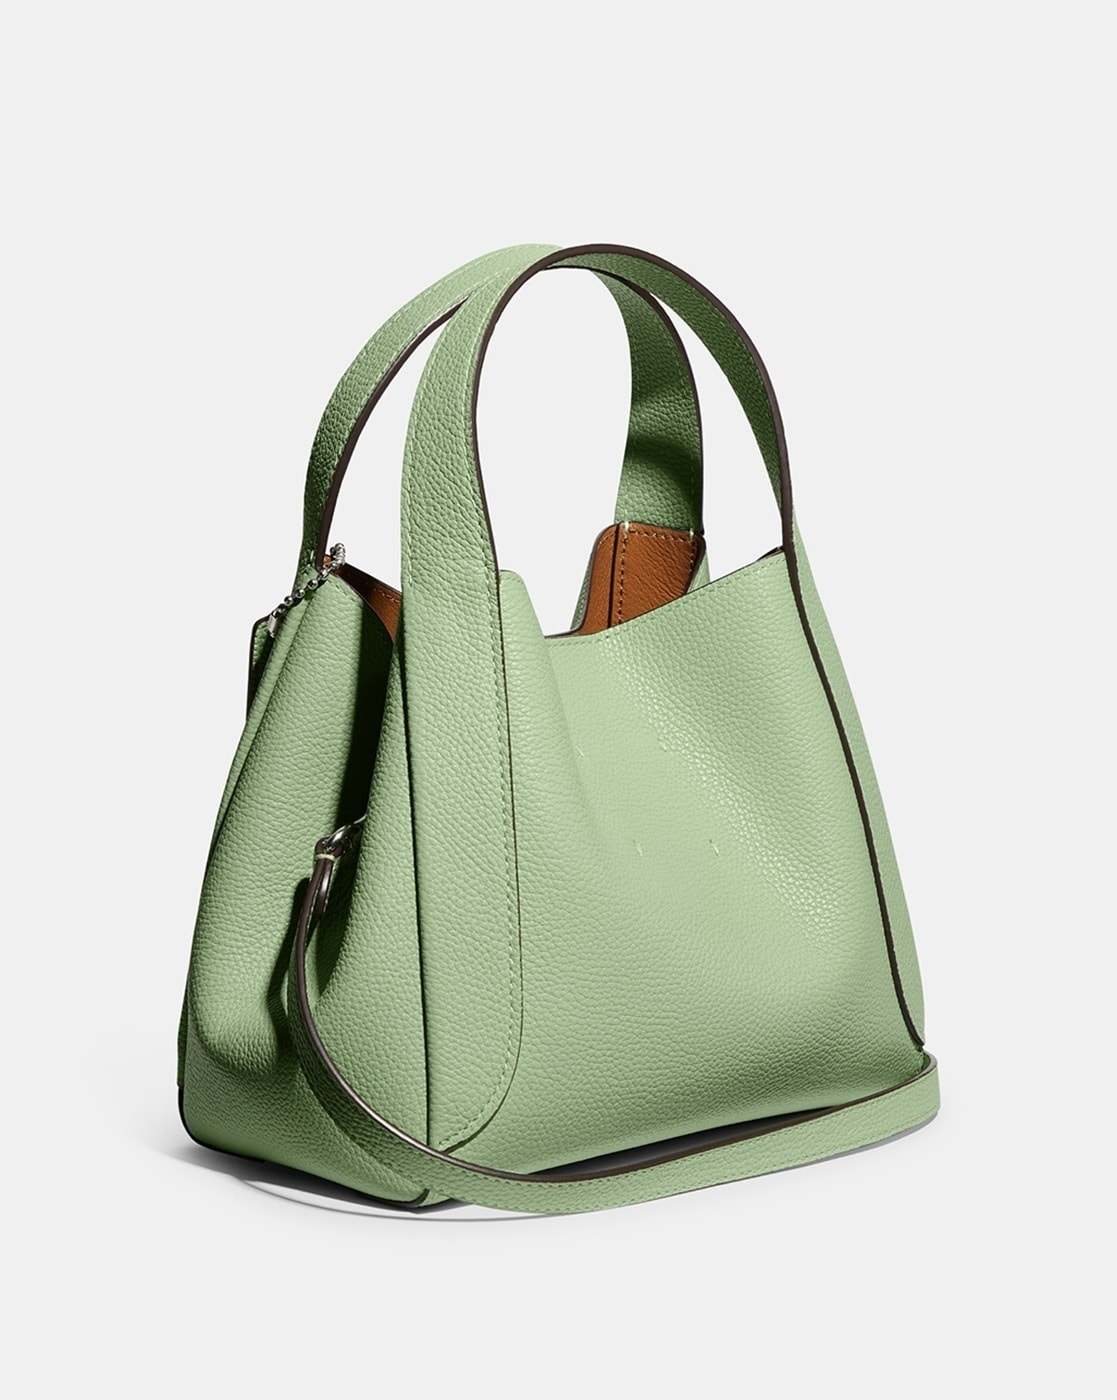 Buy Coach White Hadley 21 Medium Hobo Bag for Women Online @ Tata